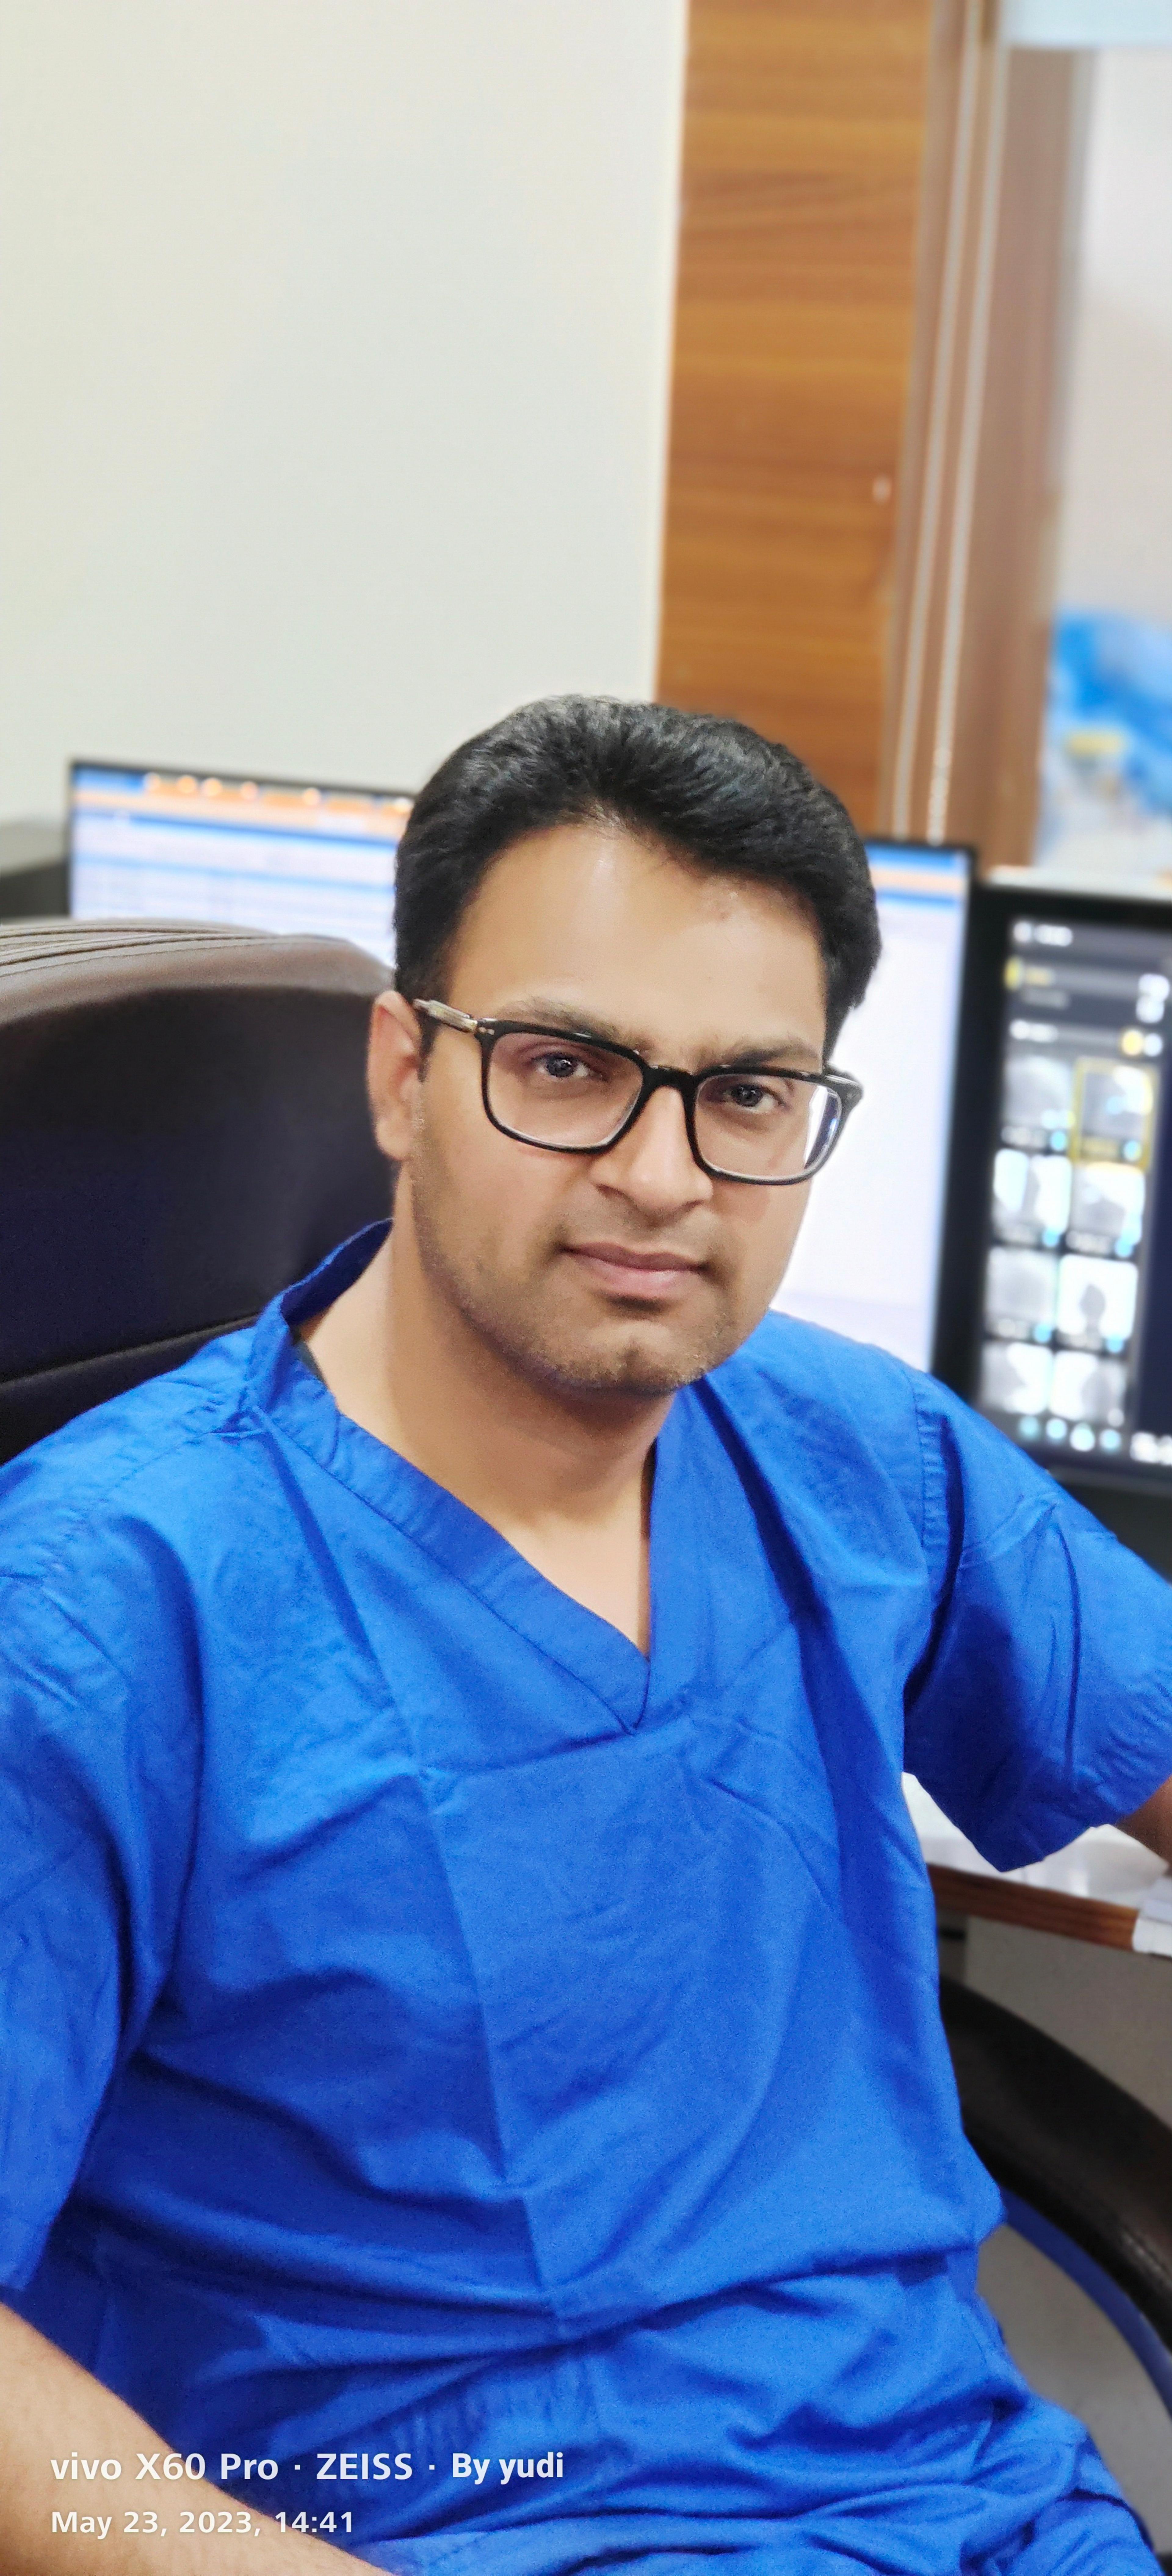 Dr. Krishan Yadav